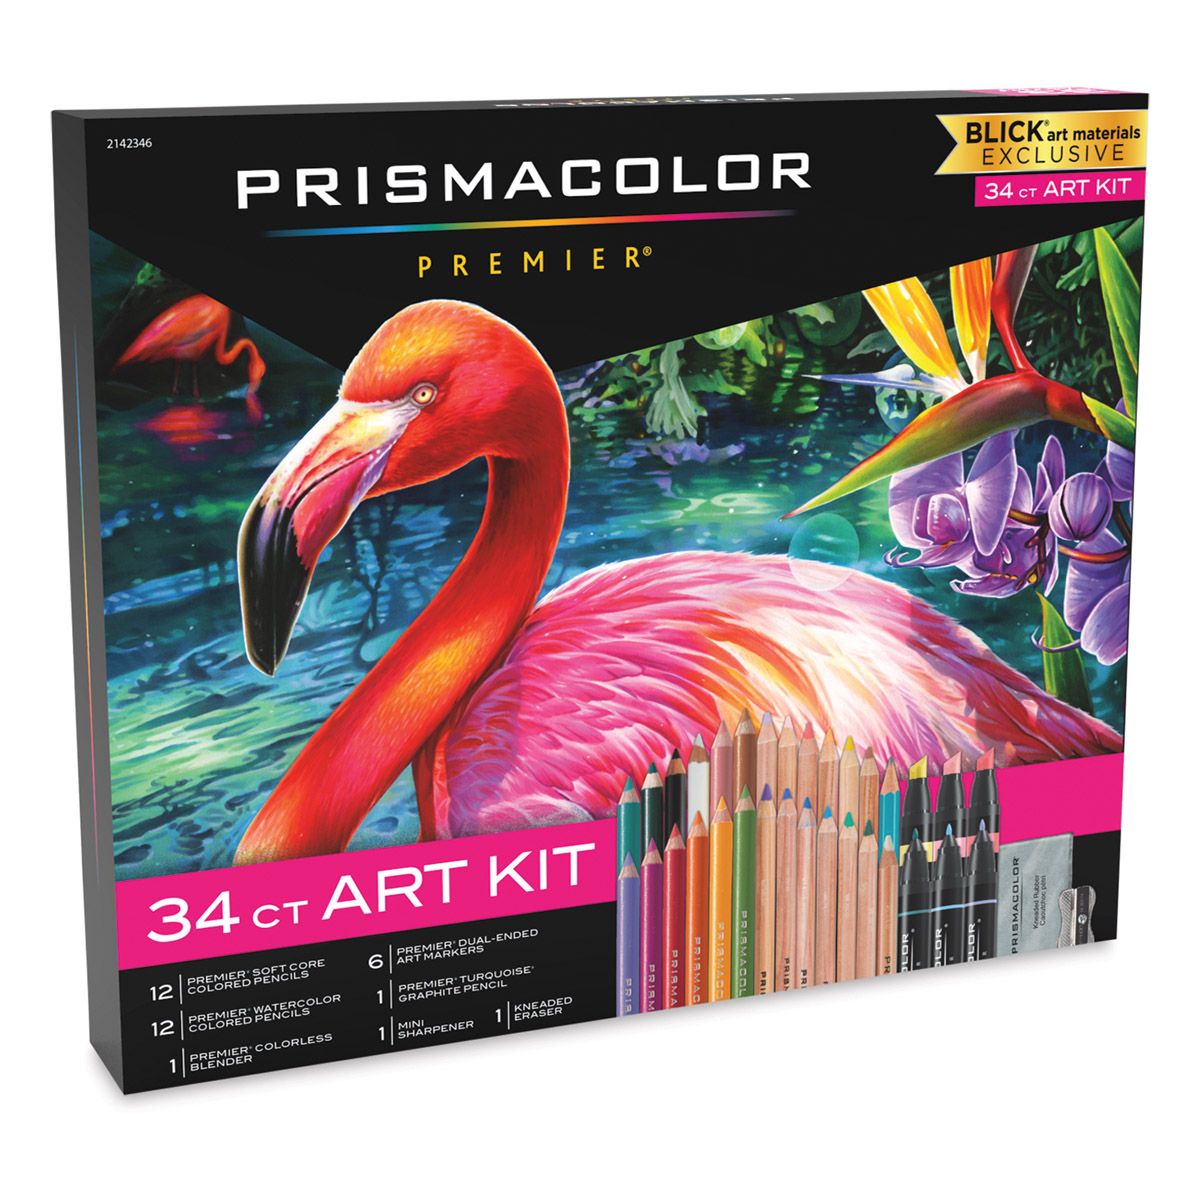 Unboxing the Prismacolor Technique Boxes